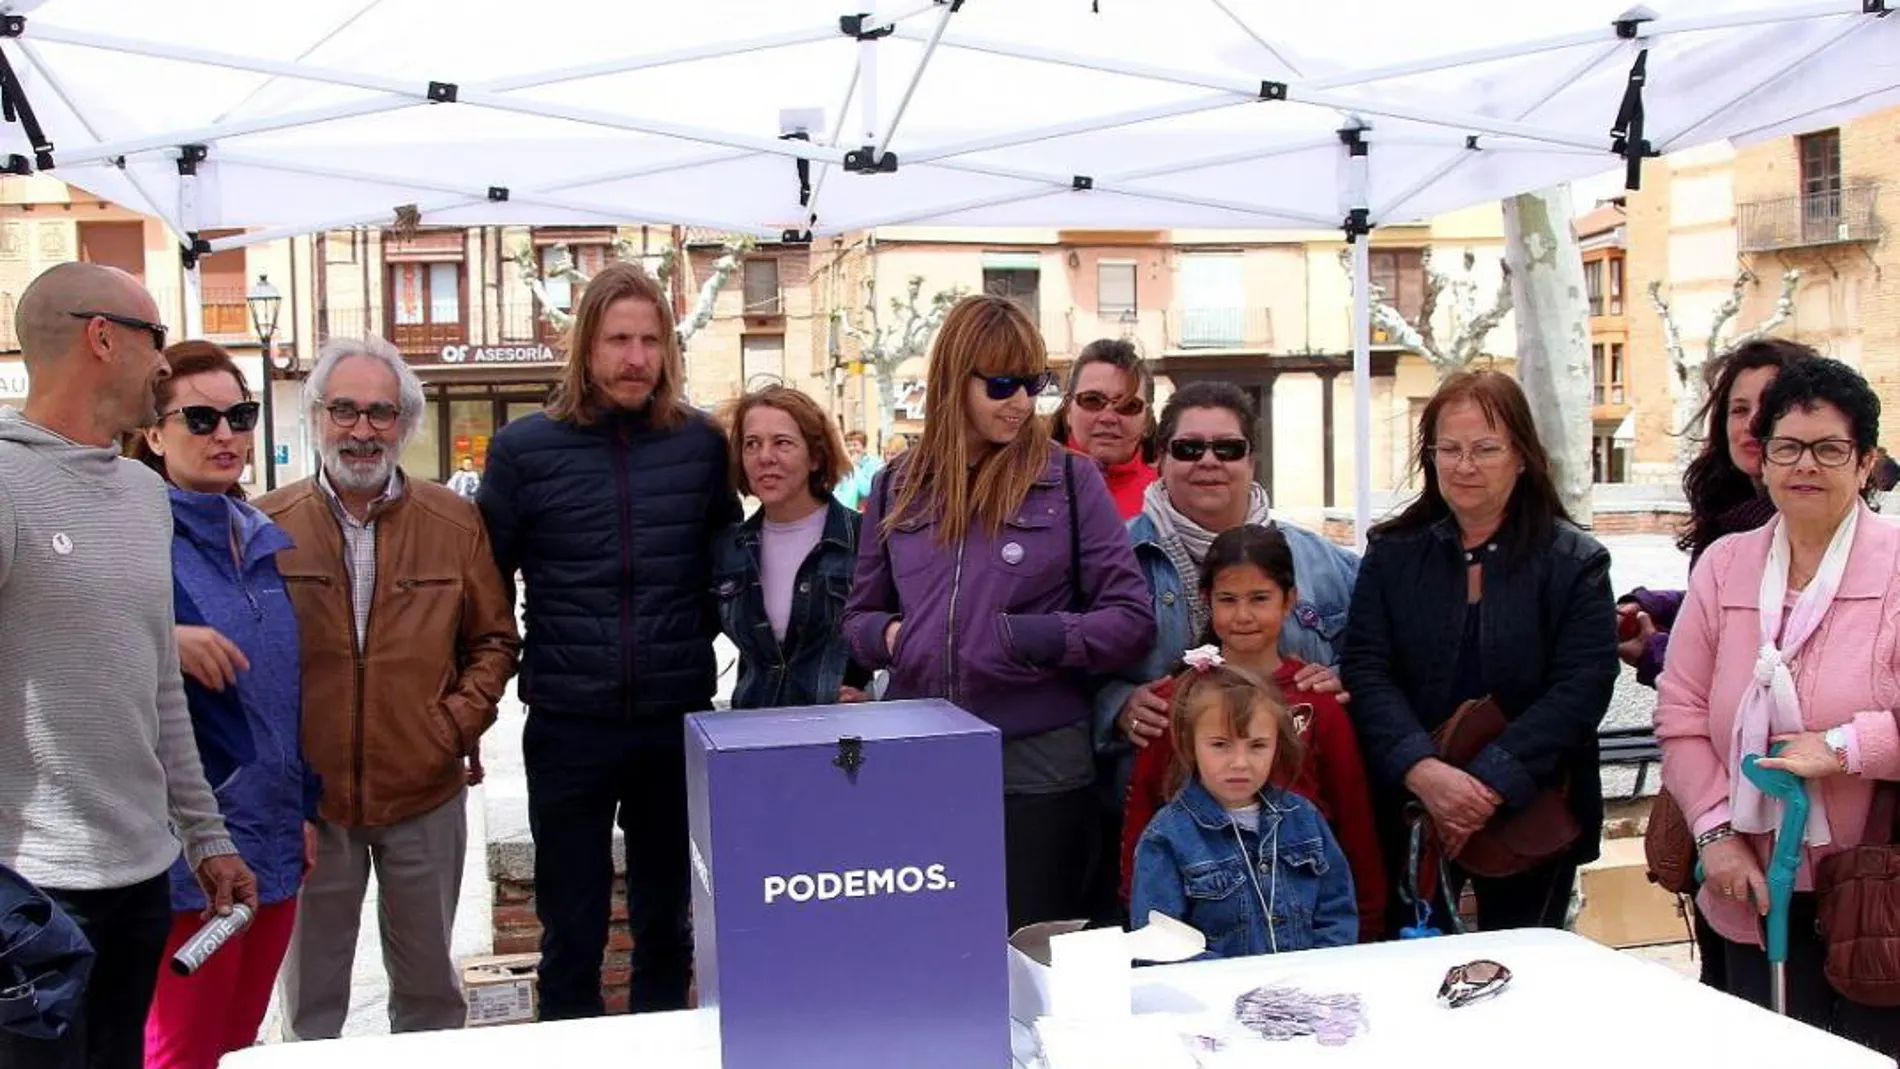 El secretario regional de Podemos, Pablo Fernández, presenta la campaña en Toro / J. L. Leal/Ical